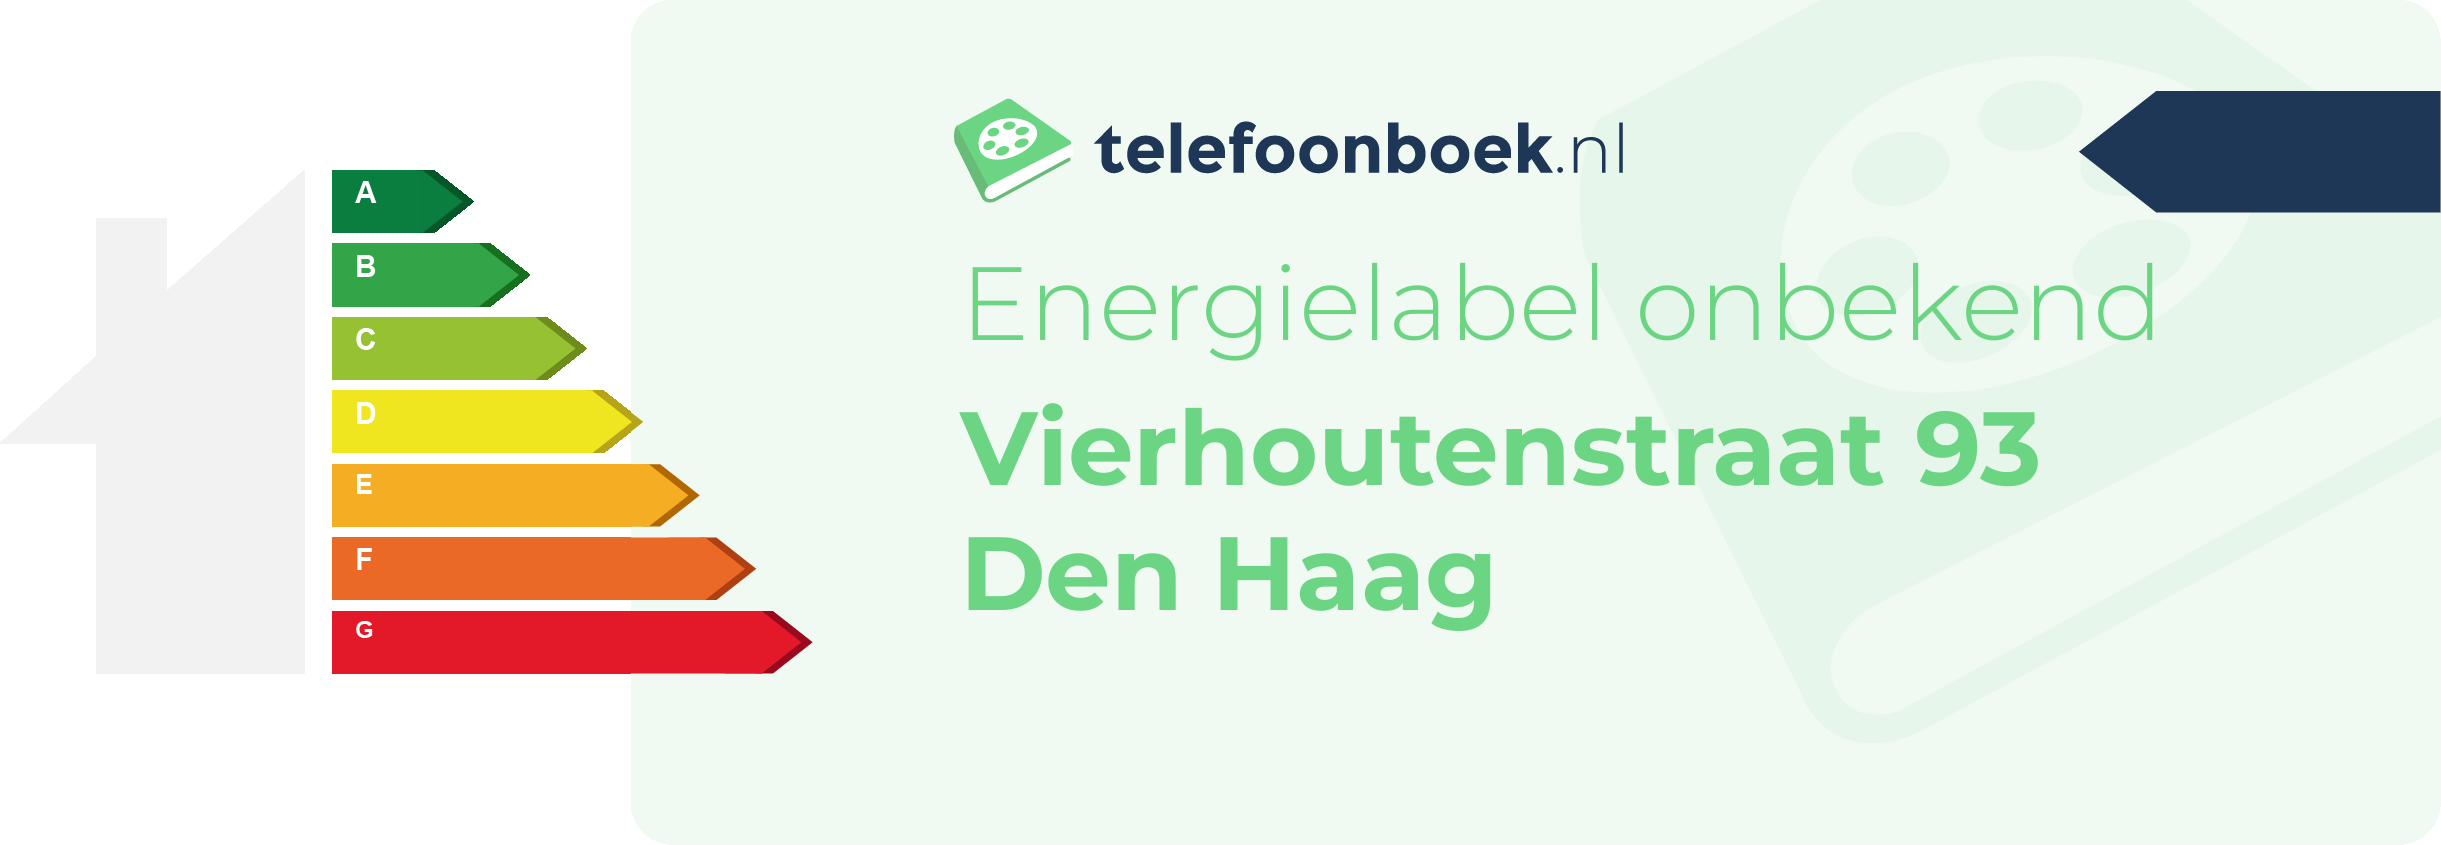 Energielabel Vierhoutenstraat 93 Den Haag